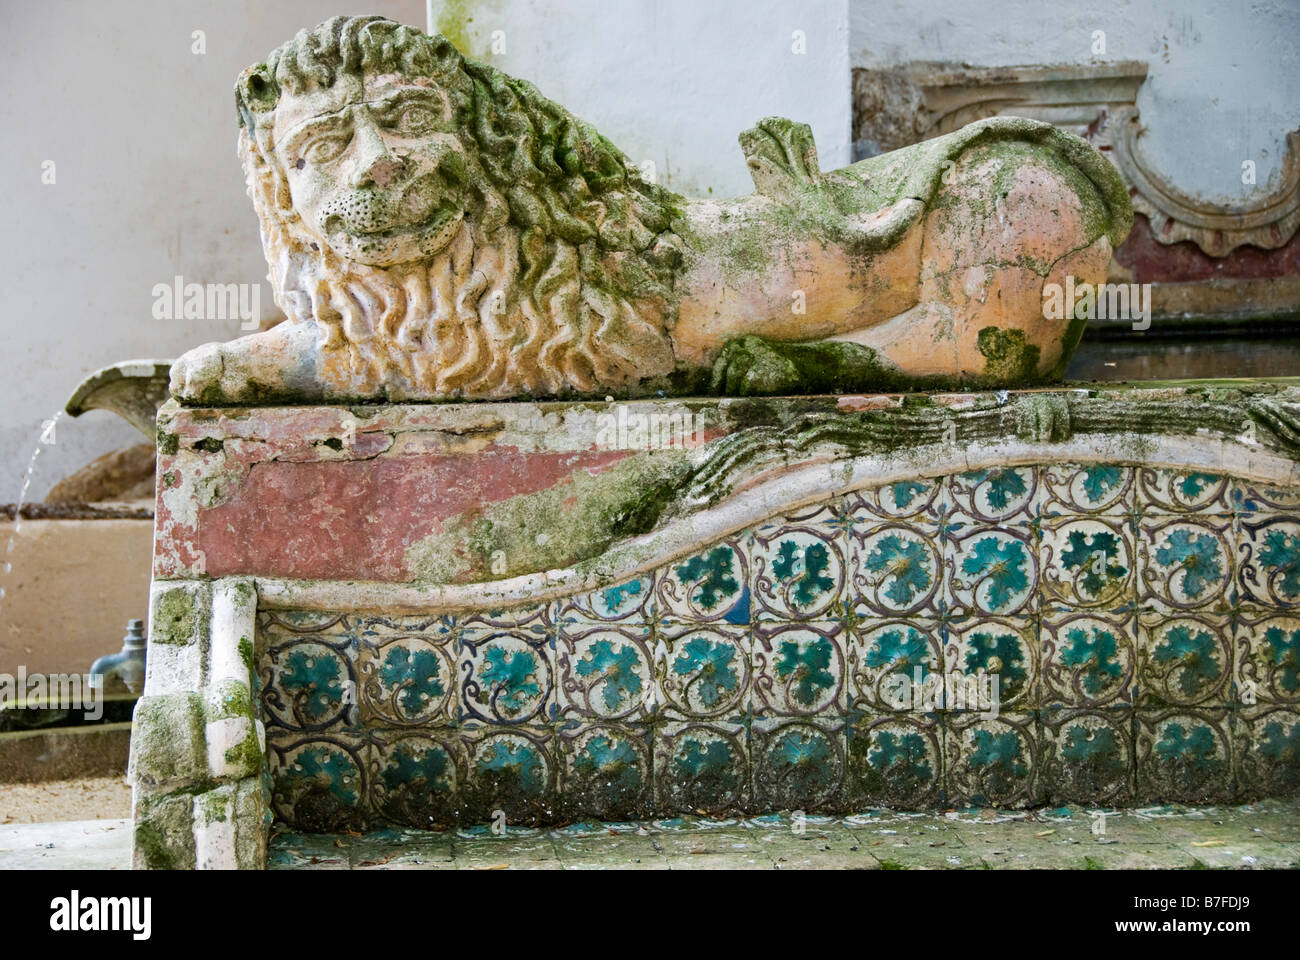 Dans le jardin du Palais national (Palais national), Sintra, Portugal. Un siège décoré de tuiles (azulejos) avec une sculpture de lion Banque D'Images